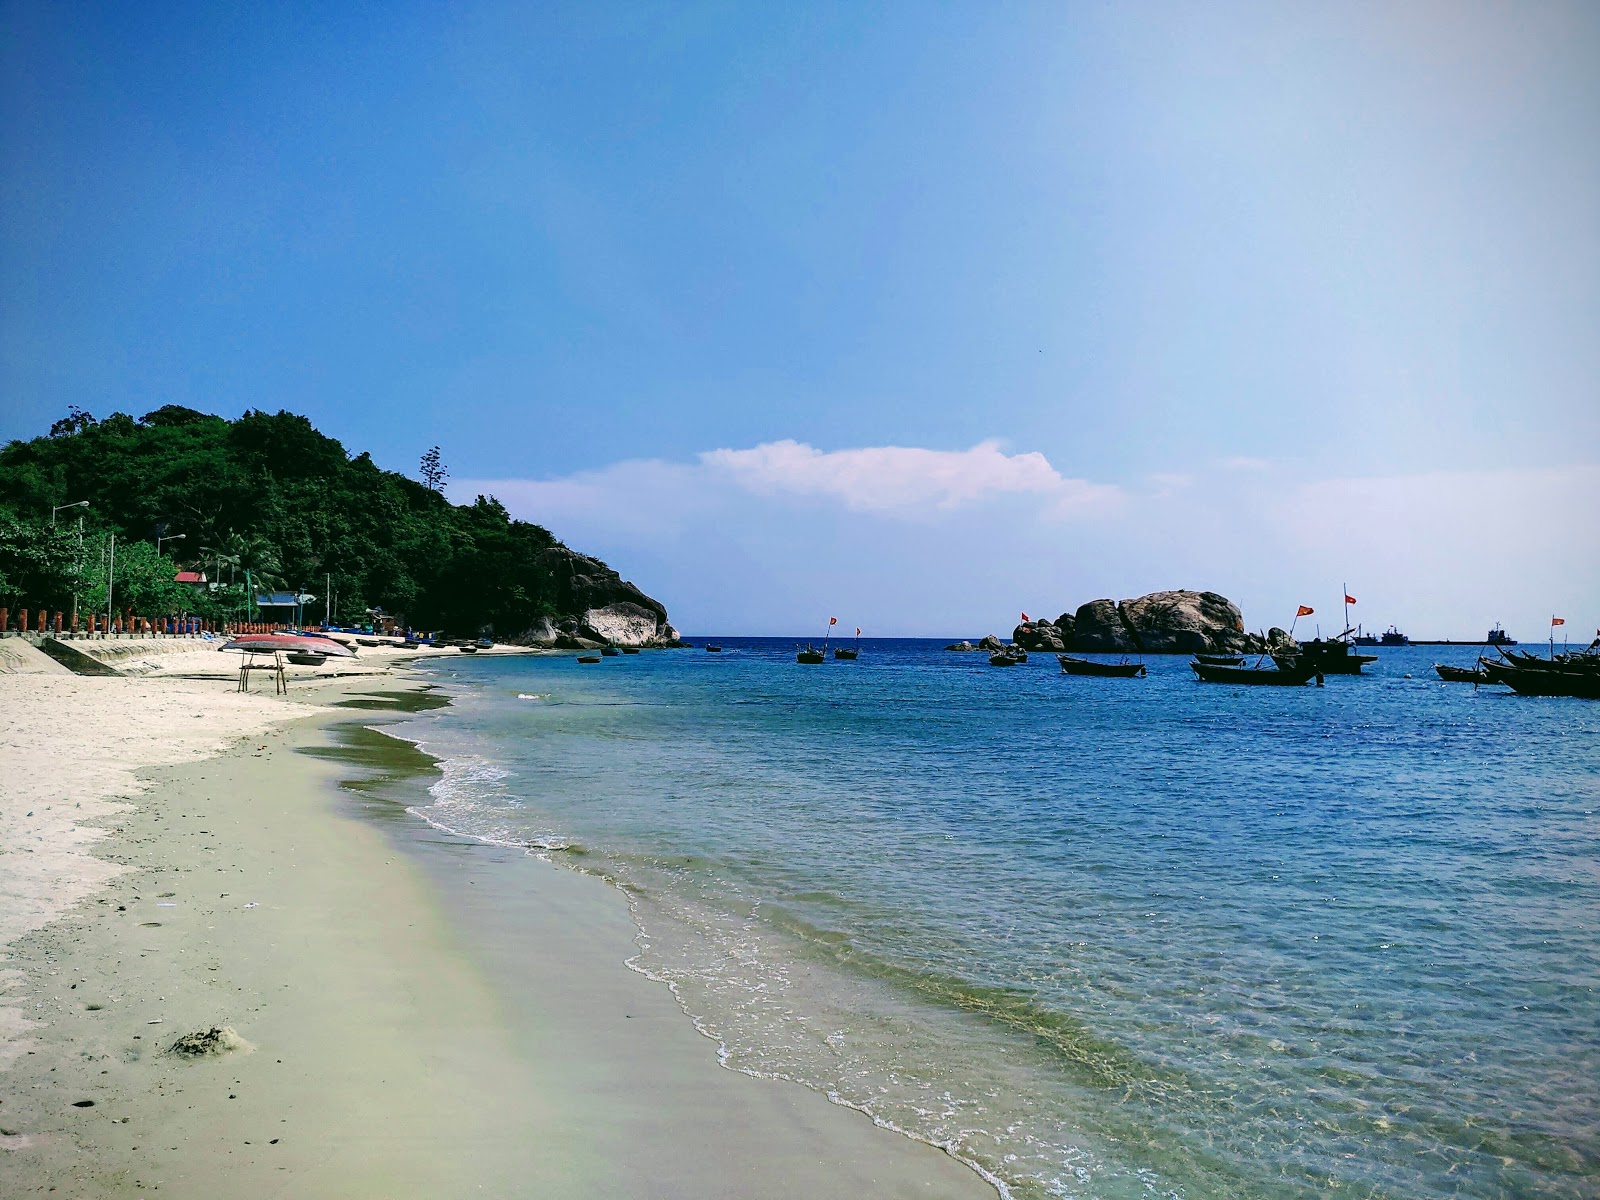 Foto de Cu Lao Cham Beach - lugar popular entre los conocedores del relax